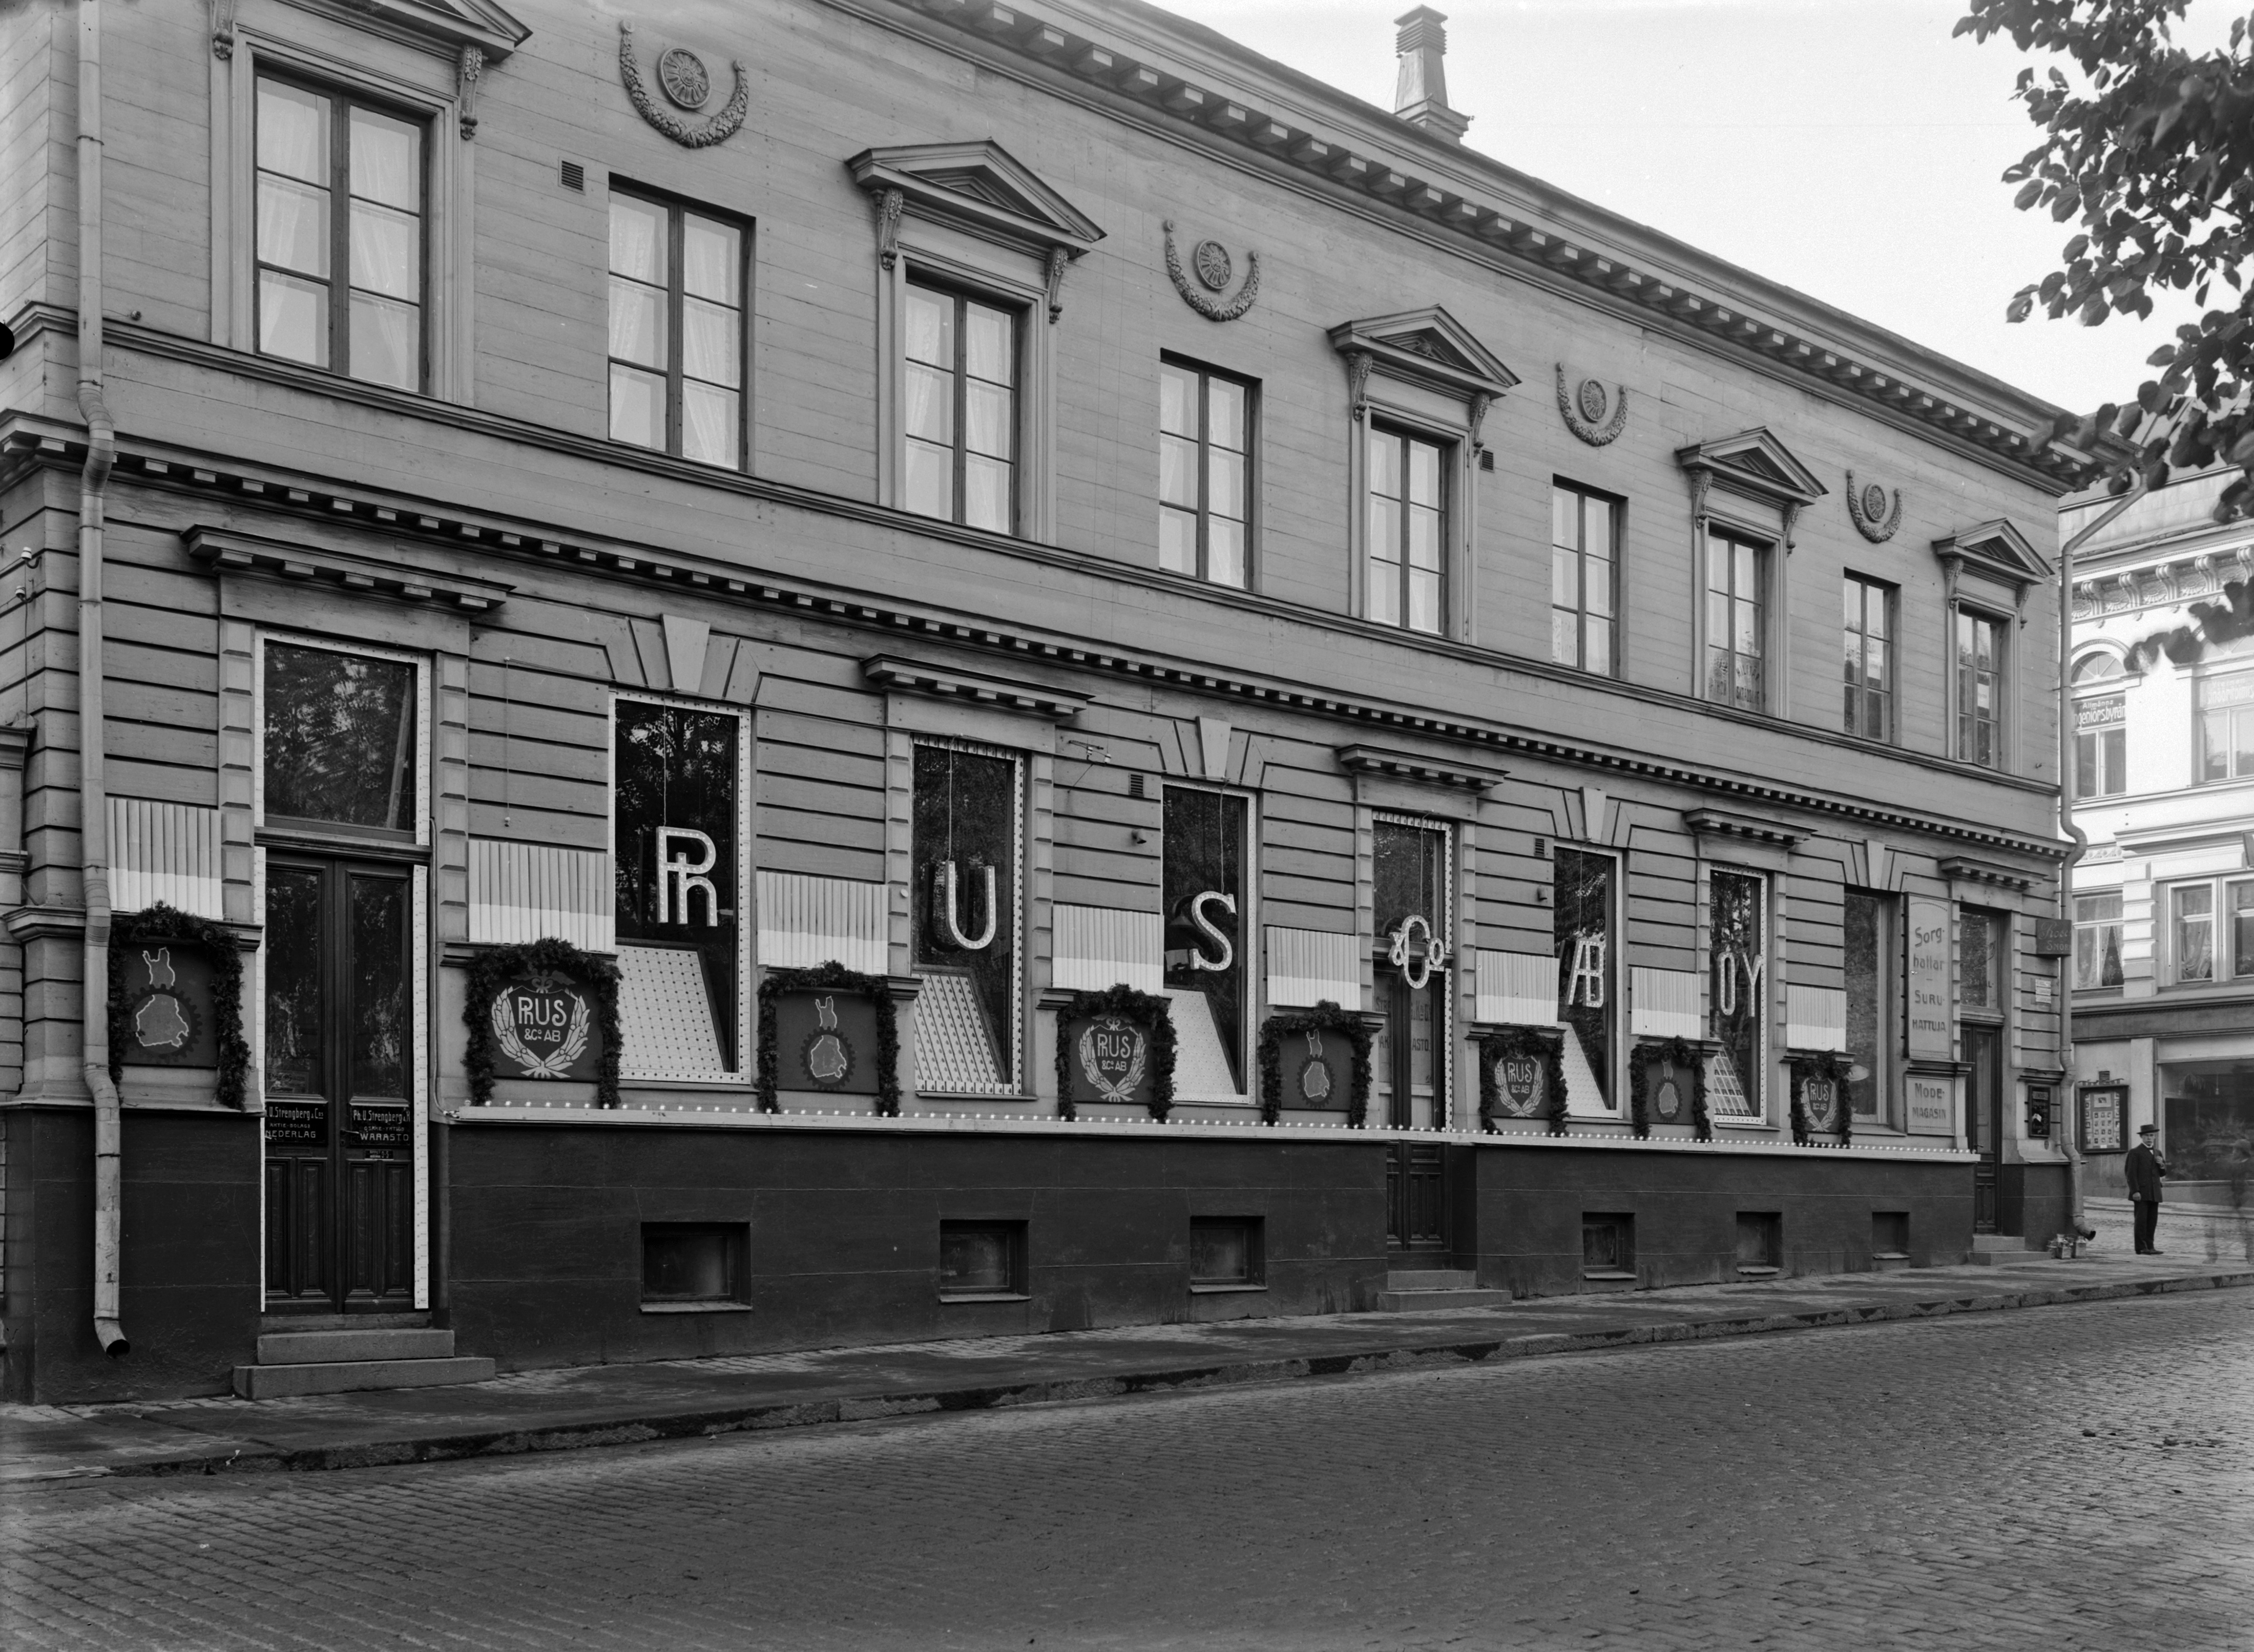 Eteläesplanadinkatu 18 - Korkeavuorenkatu 47, Ph.U. Strengberg & co. -yhtiön tupakkavarasto juhlakoristeluna Suomalaisen viikon 27.9.-4.10.1913. kunniaksi. Rakennuksen Korkeavuorenkadun puoleisessa kulmassa sijaitsi myös muotiliike (hattukauppa). Vuonna 1912 perustettu Kotimaisen työn liitto (vuodesta 1992 Suomalaisen työn liitto) järjesti jo seuraavana vuotena ensimmäisen Suomalaisen viikon kotimaisen teollisuuden edistämiseksi. Oikealla Eteläesplanadi 20 - Korkeavuorenkatu 36 kulmatalo.